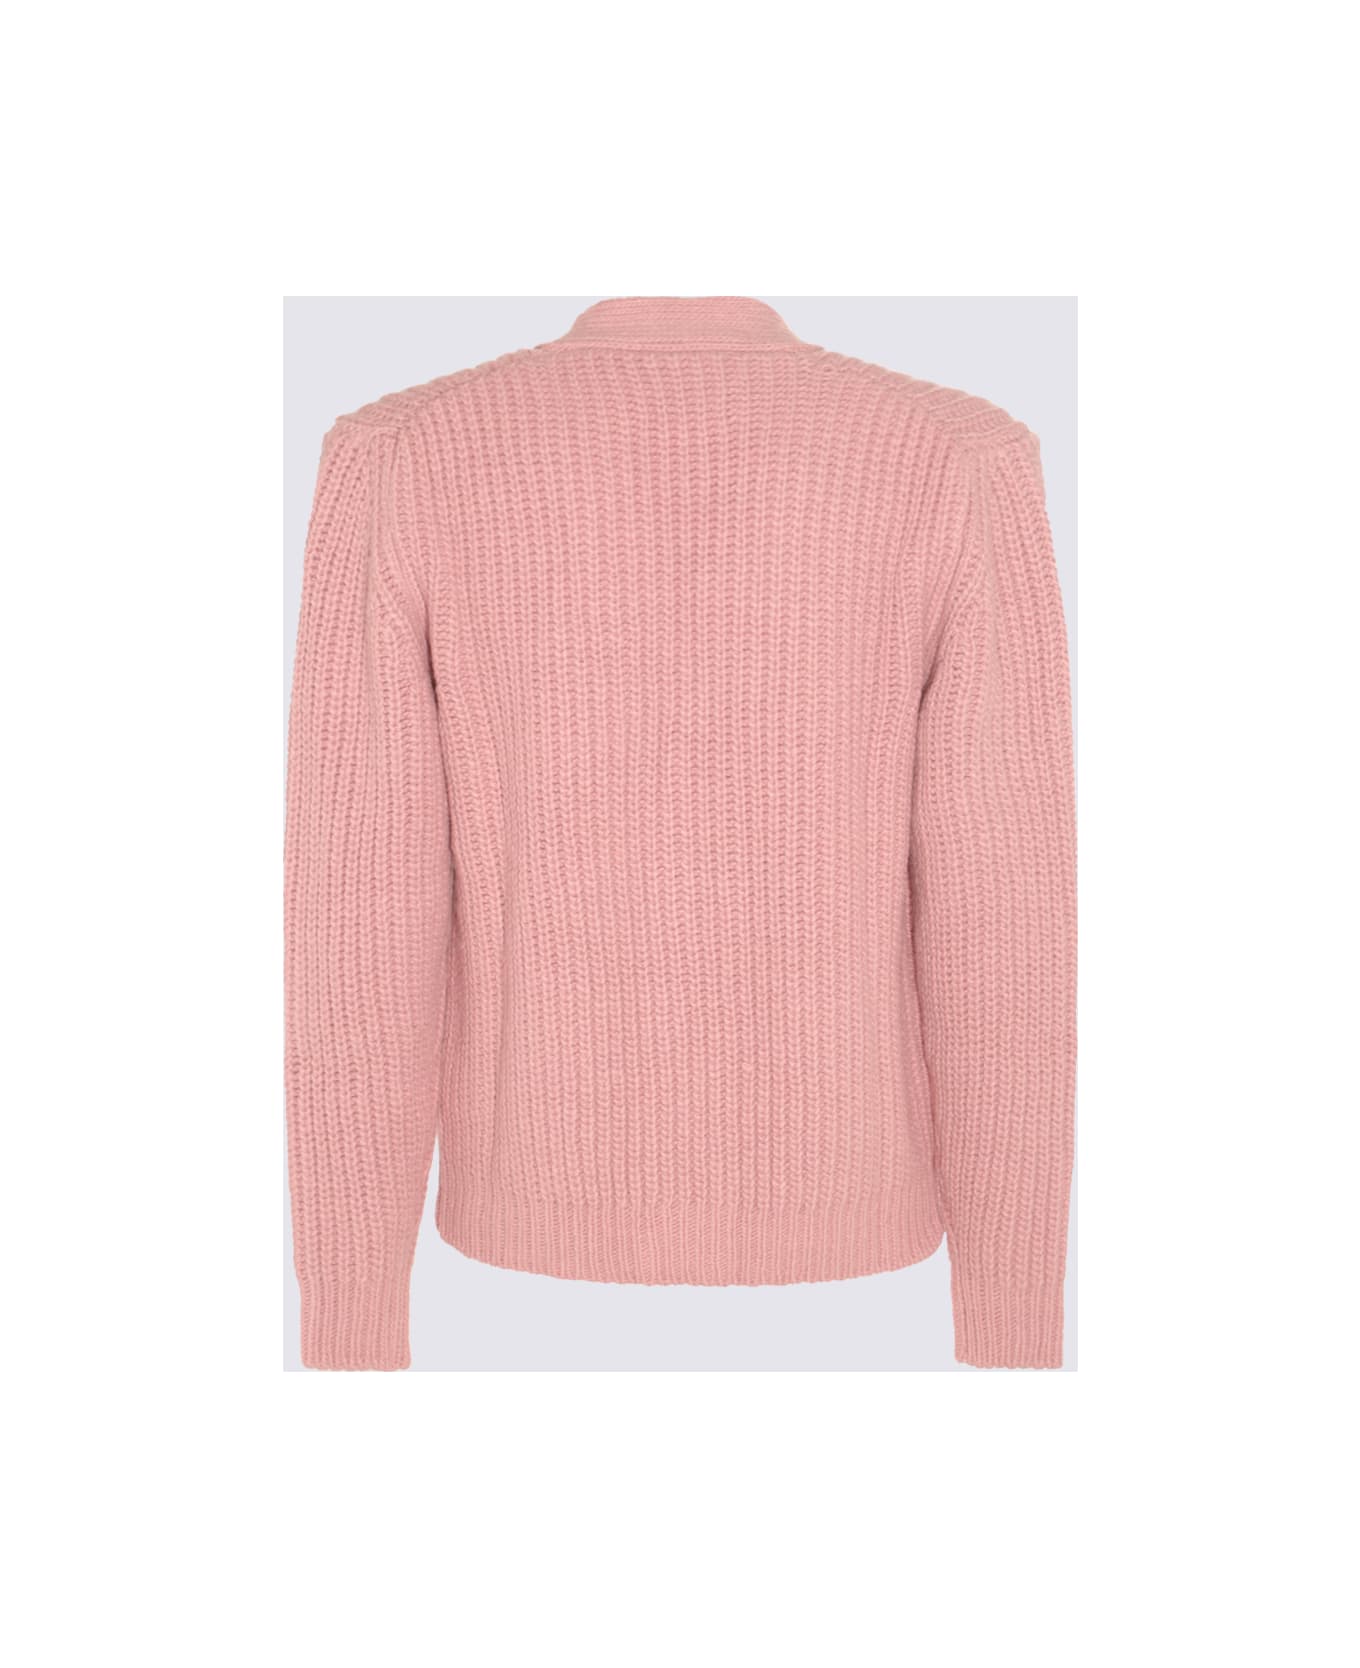 PT01 Pink Wool Blend Cardigan